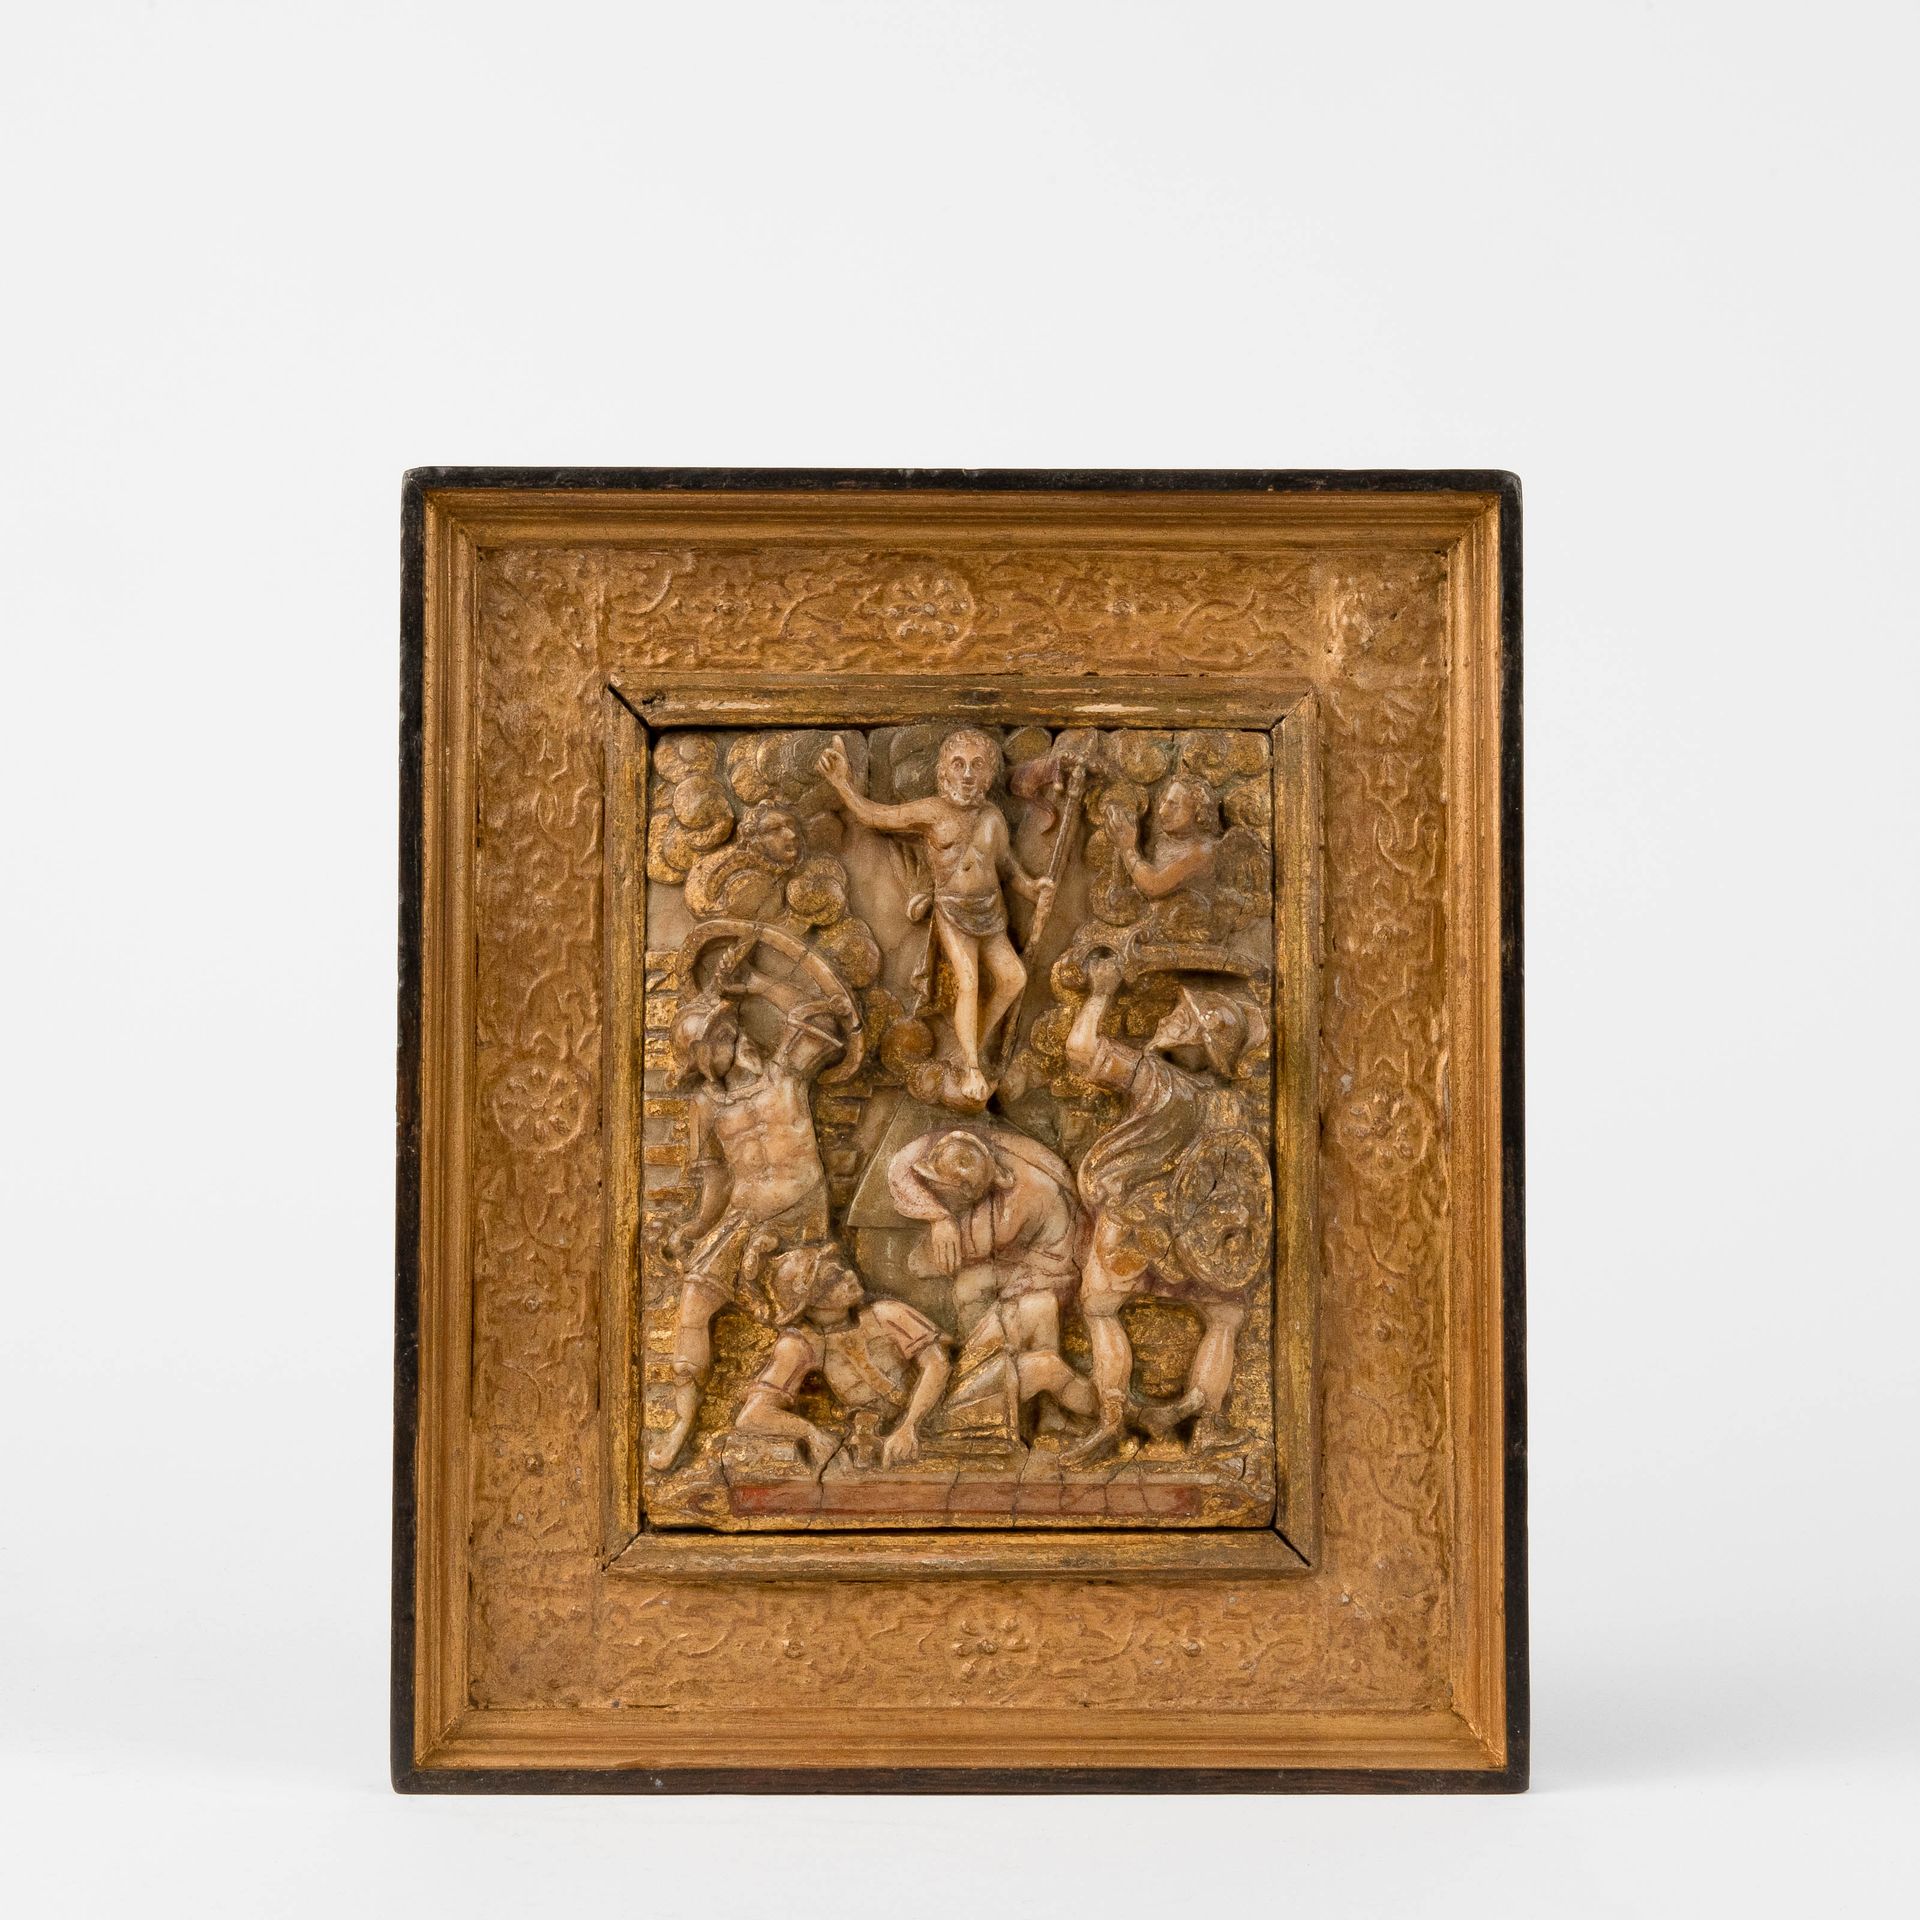 Relief. Malines. Deuxième moitié du 16ème siècle. 救济。梅赫伦。16世纪下半叶。

描绘了基督的复活。

雪花&hellip;